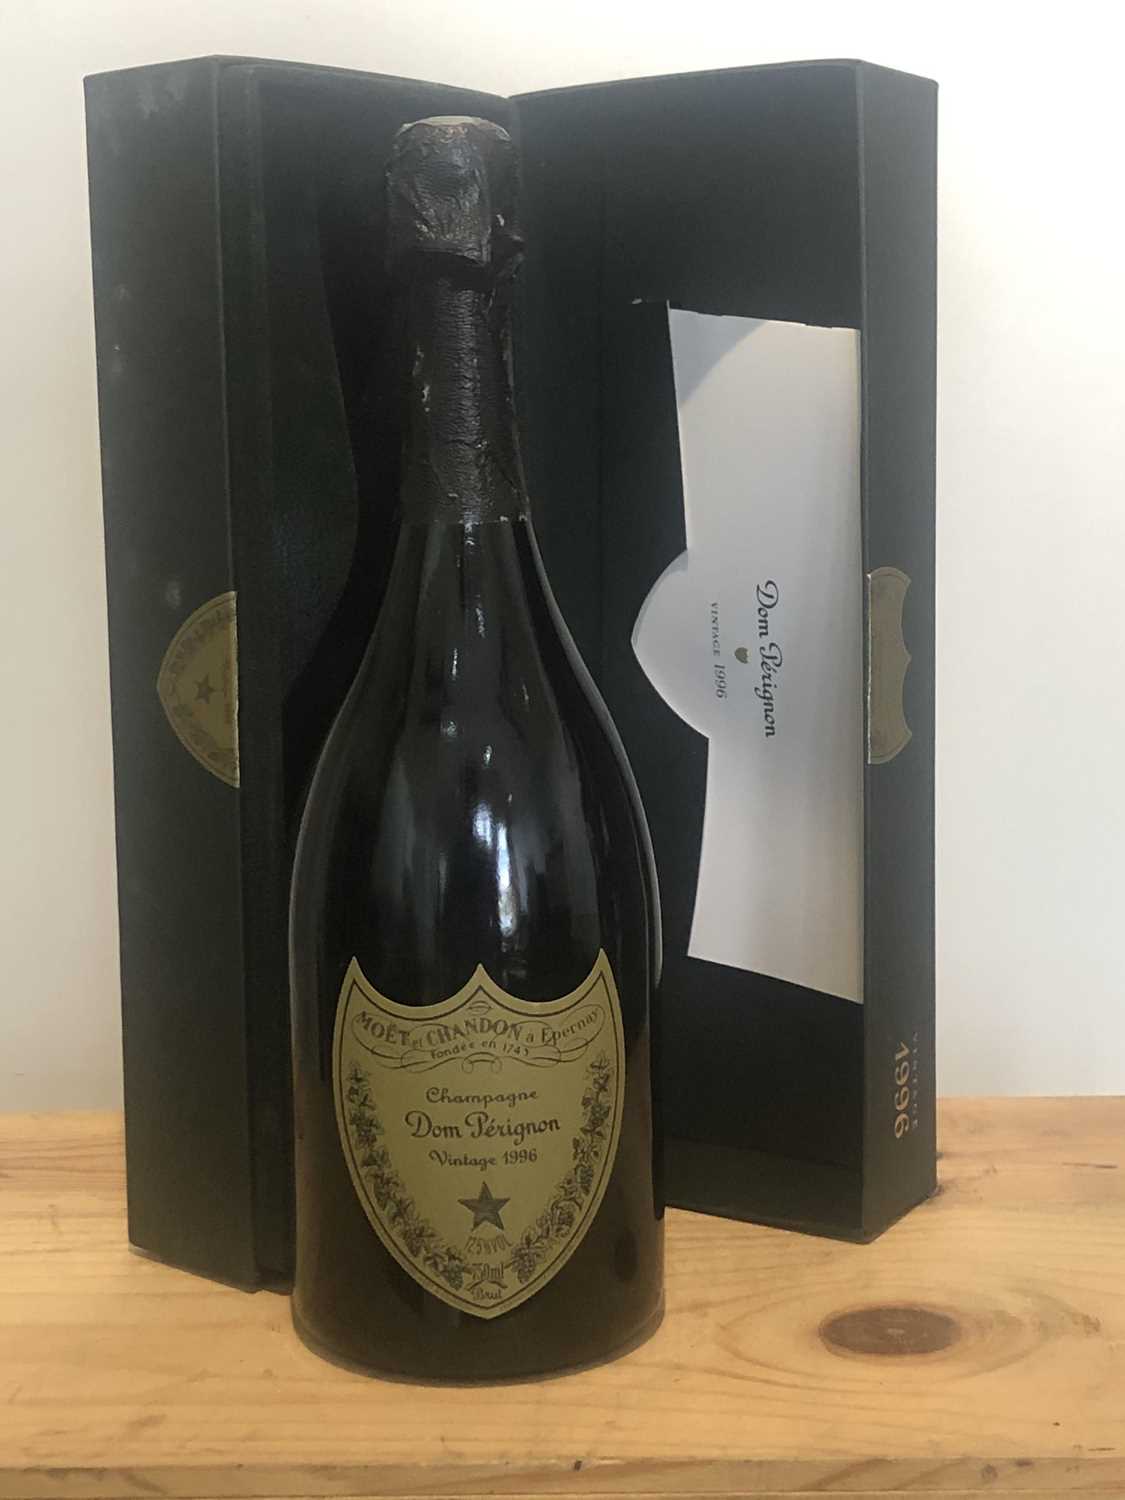 Lot 65 - 1 bottle Champagne ‘Dom Perignon’ vintage 1996